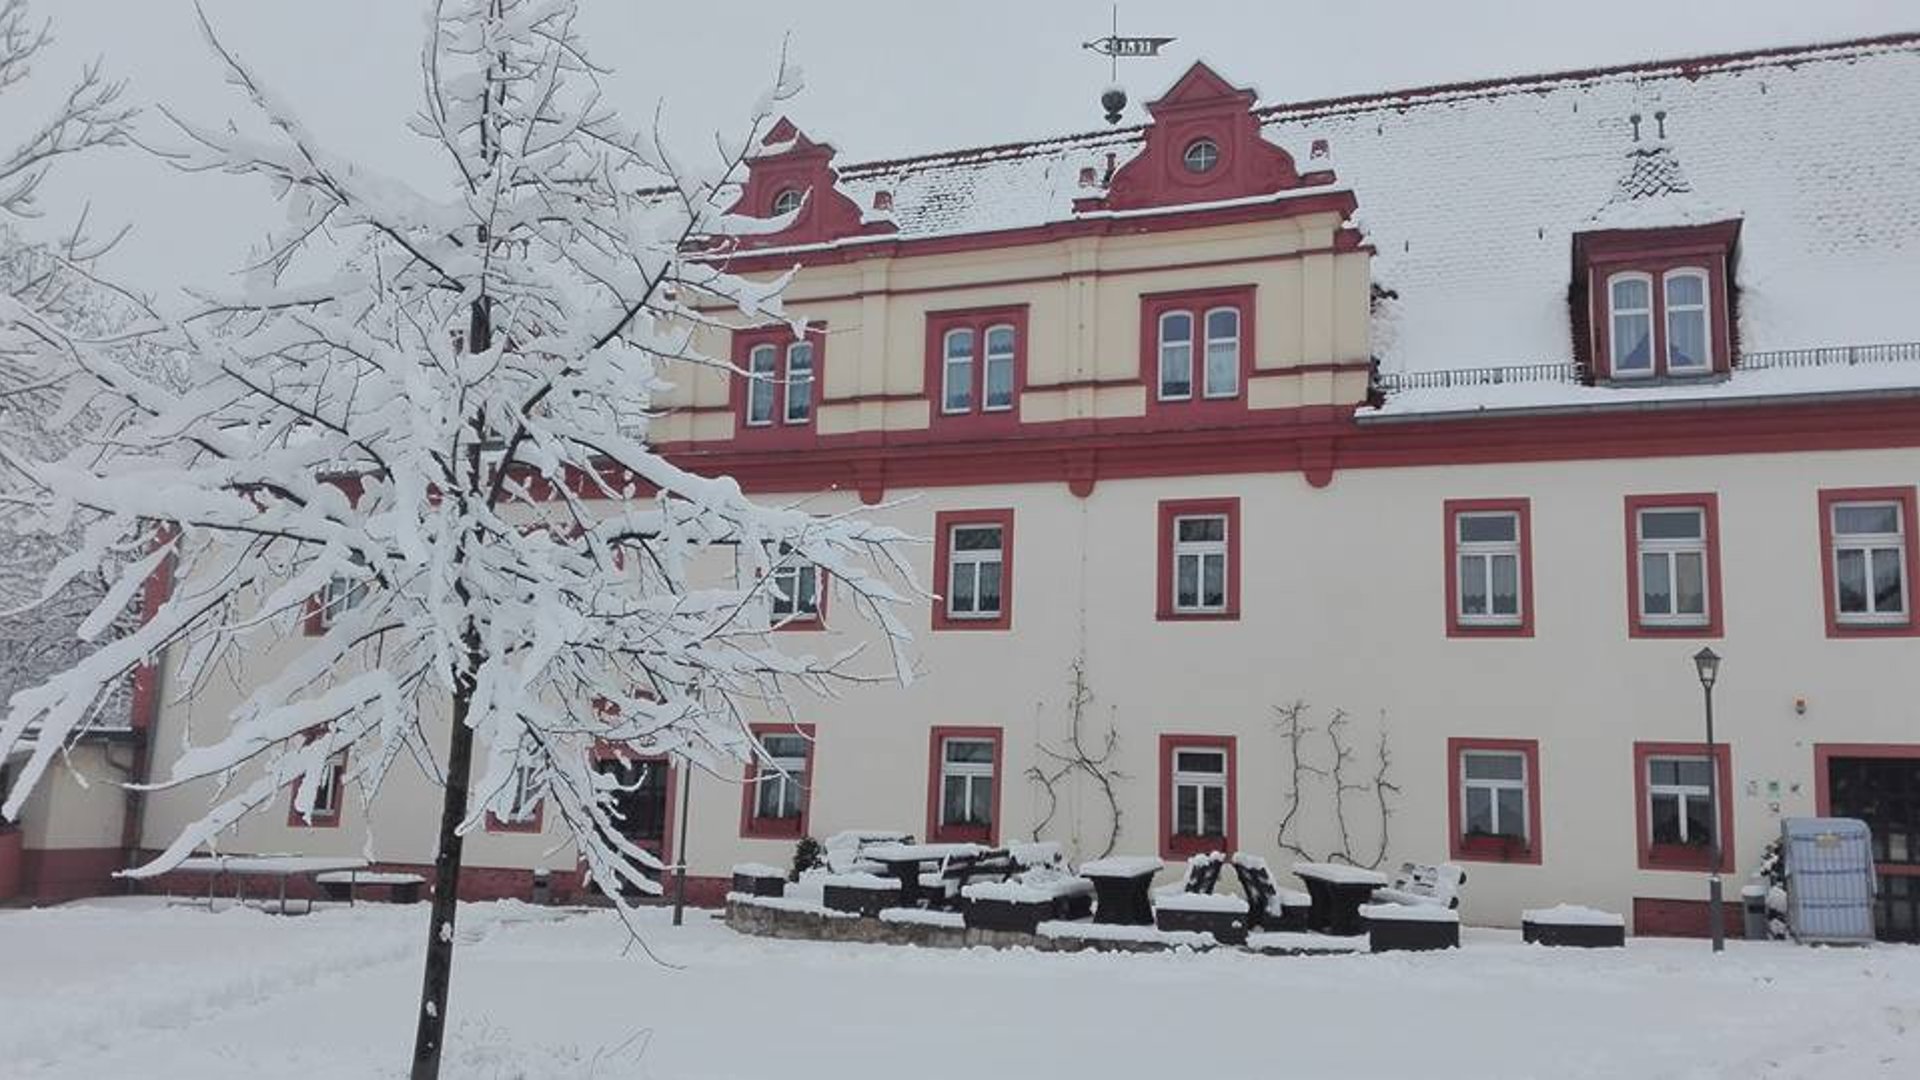 Winterferienlager in Thüringen